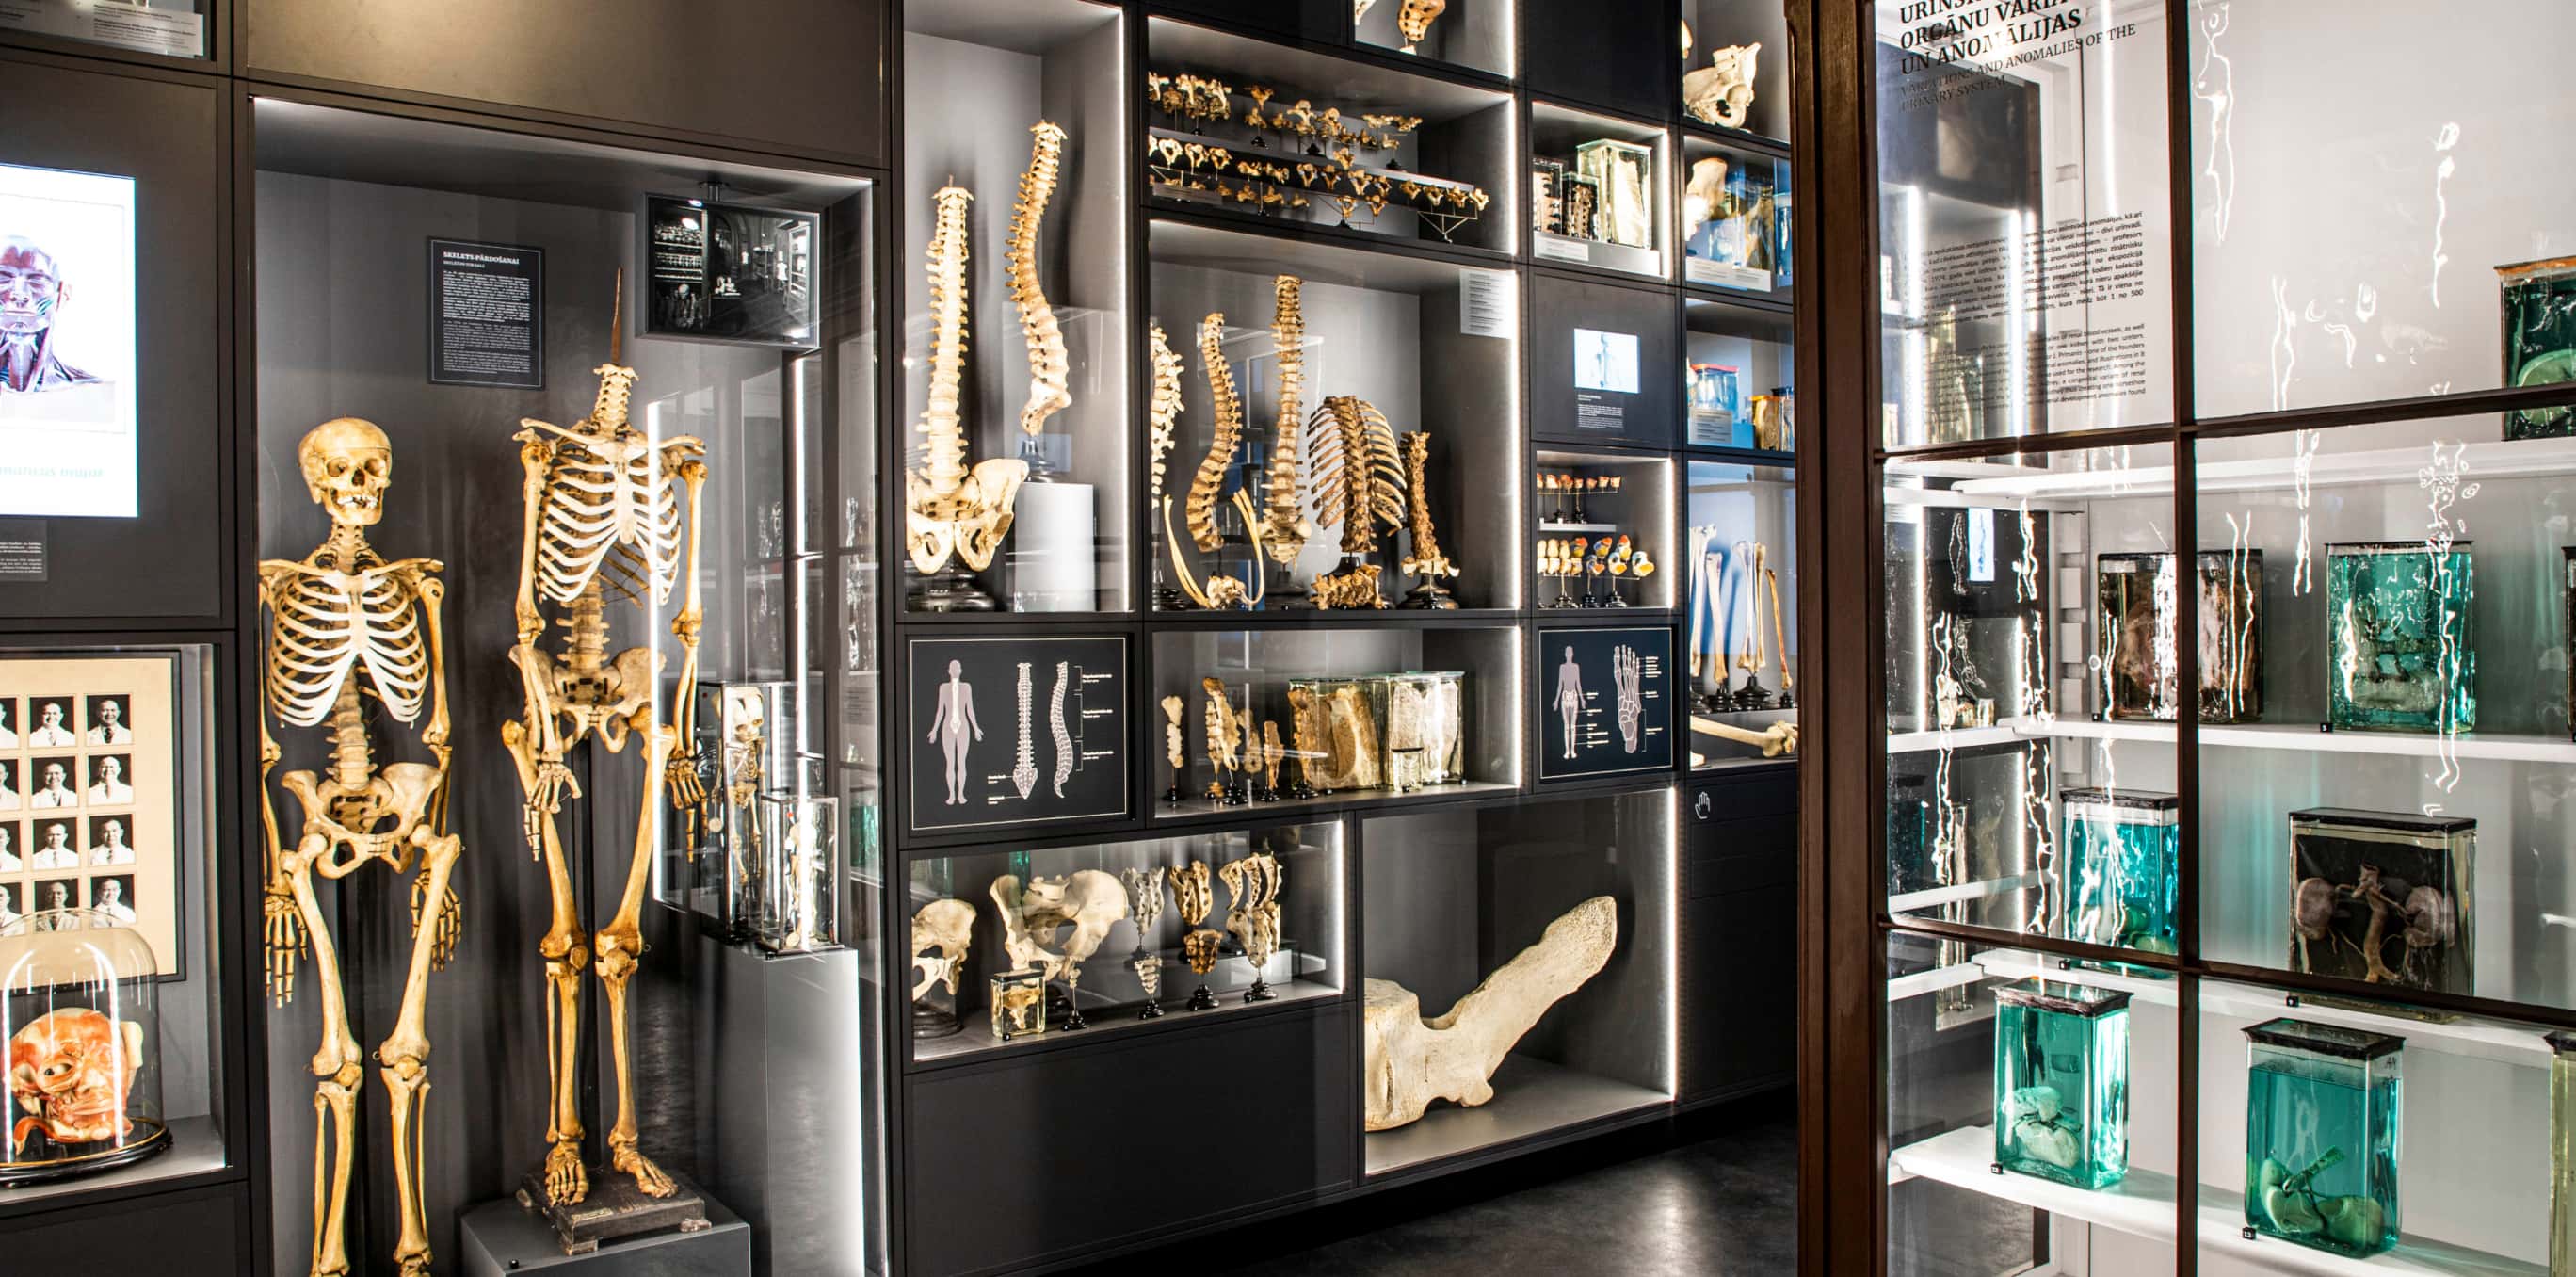 RSU anatomy museum